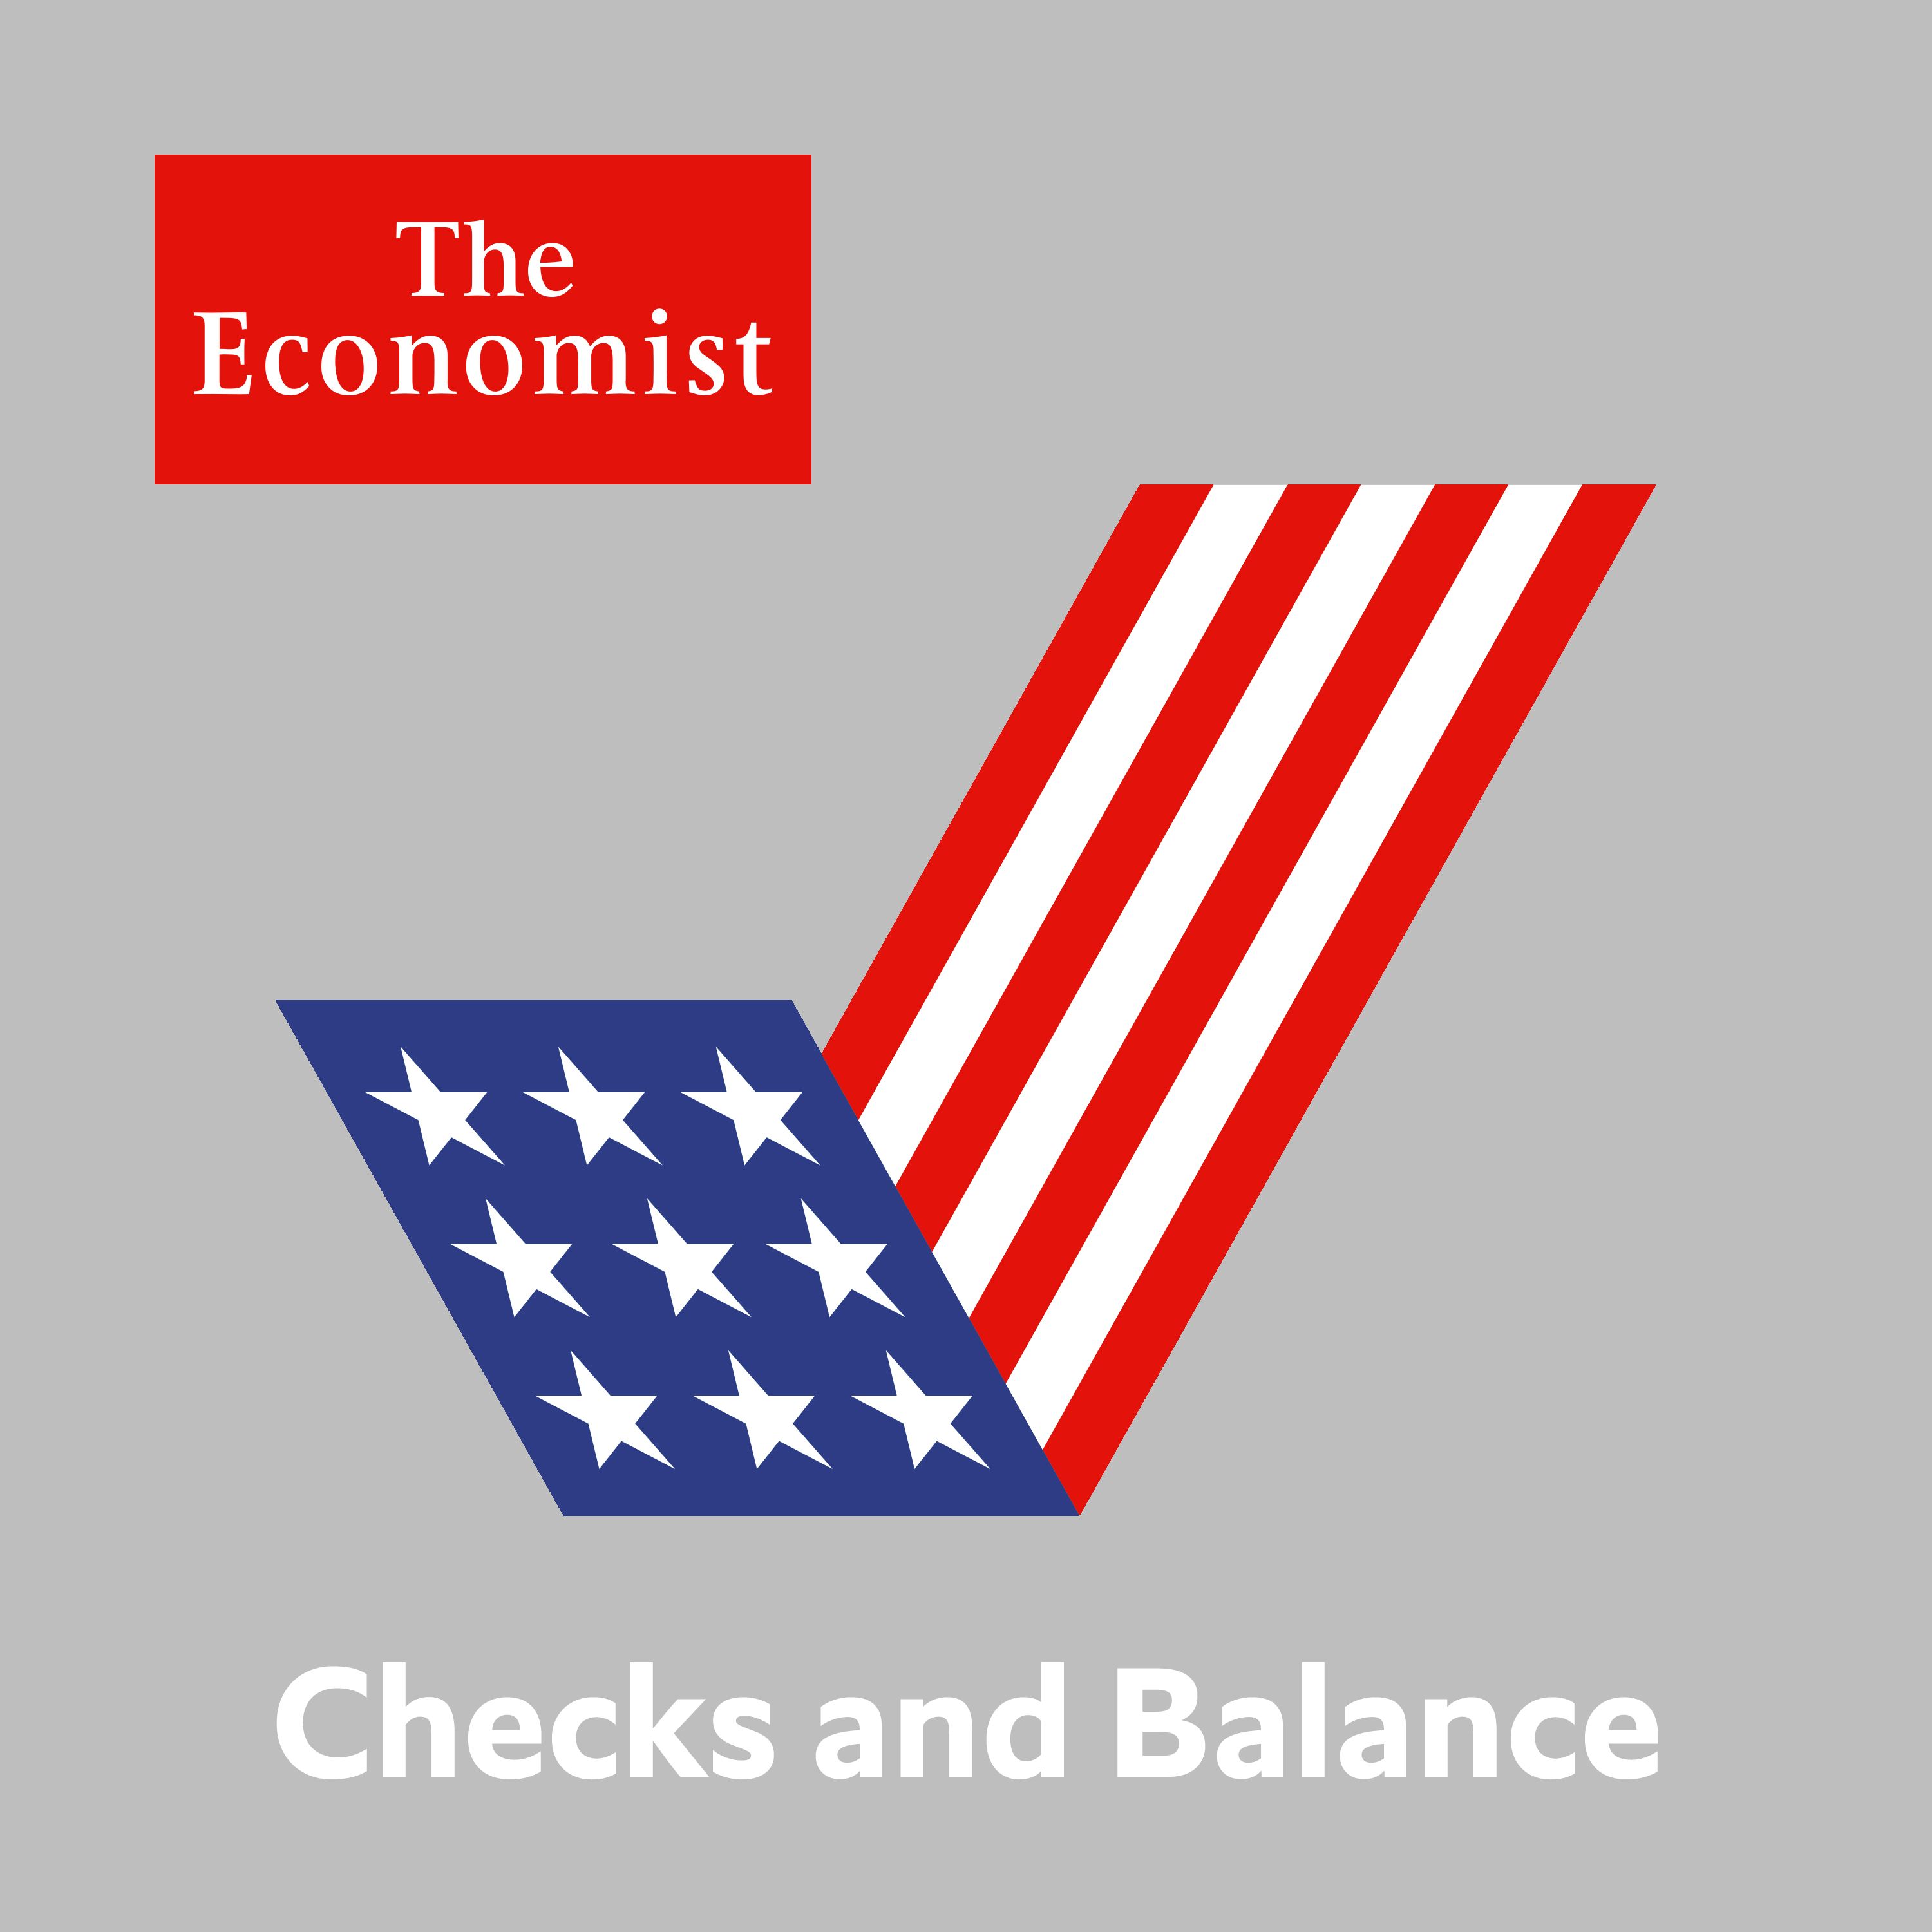 Checks and Balance: Supreme authority